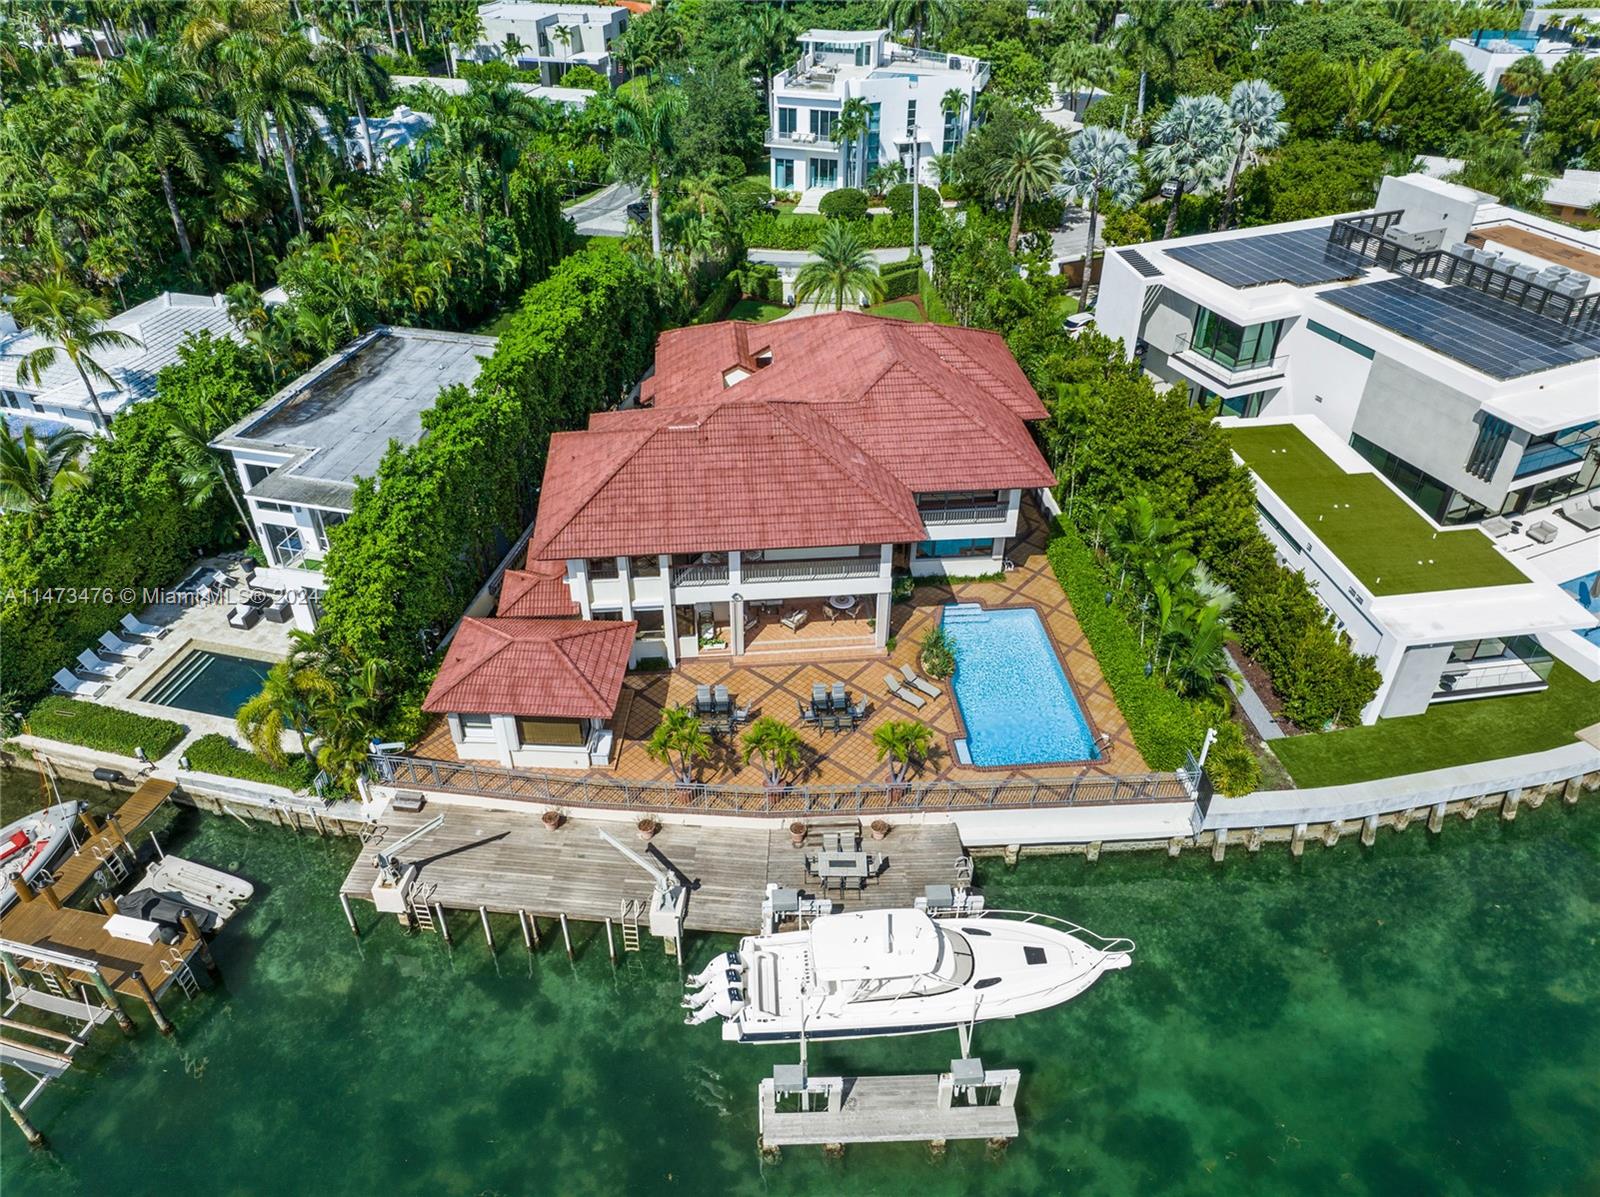 Dream home located at 409 E. San Marino Drive, Miami Beach, Florida.